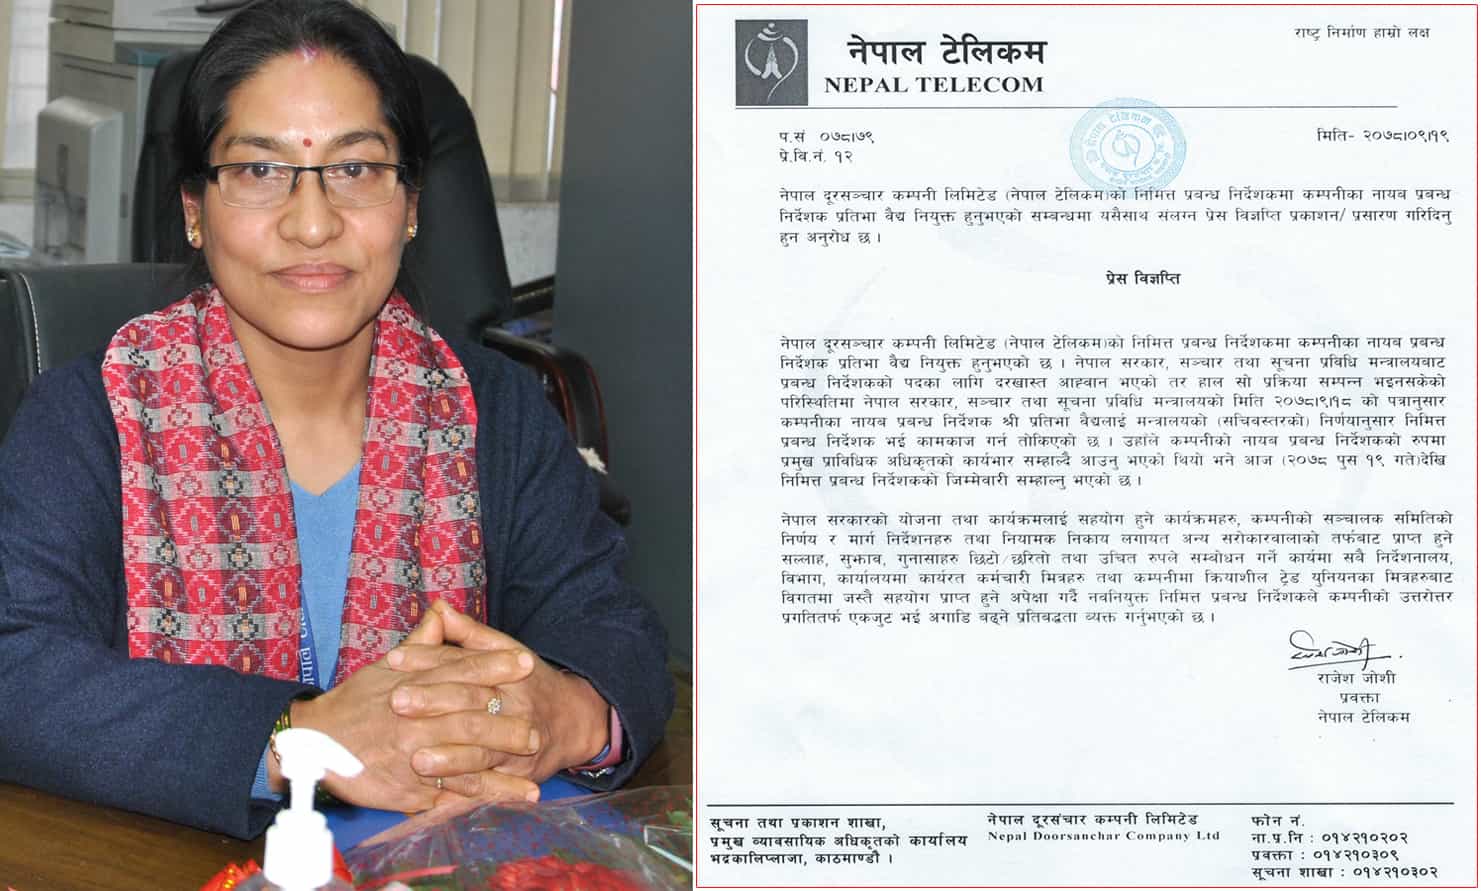 नेपाल टेलिकमको निमित्त प्रबन्ध निर्देशकमा प्रतिभा वैद्य नियुक्त